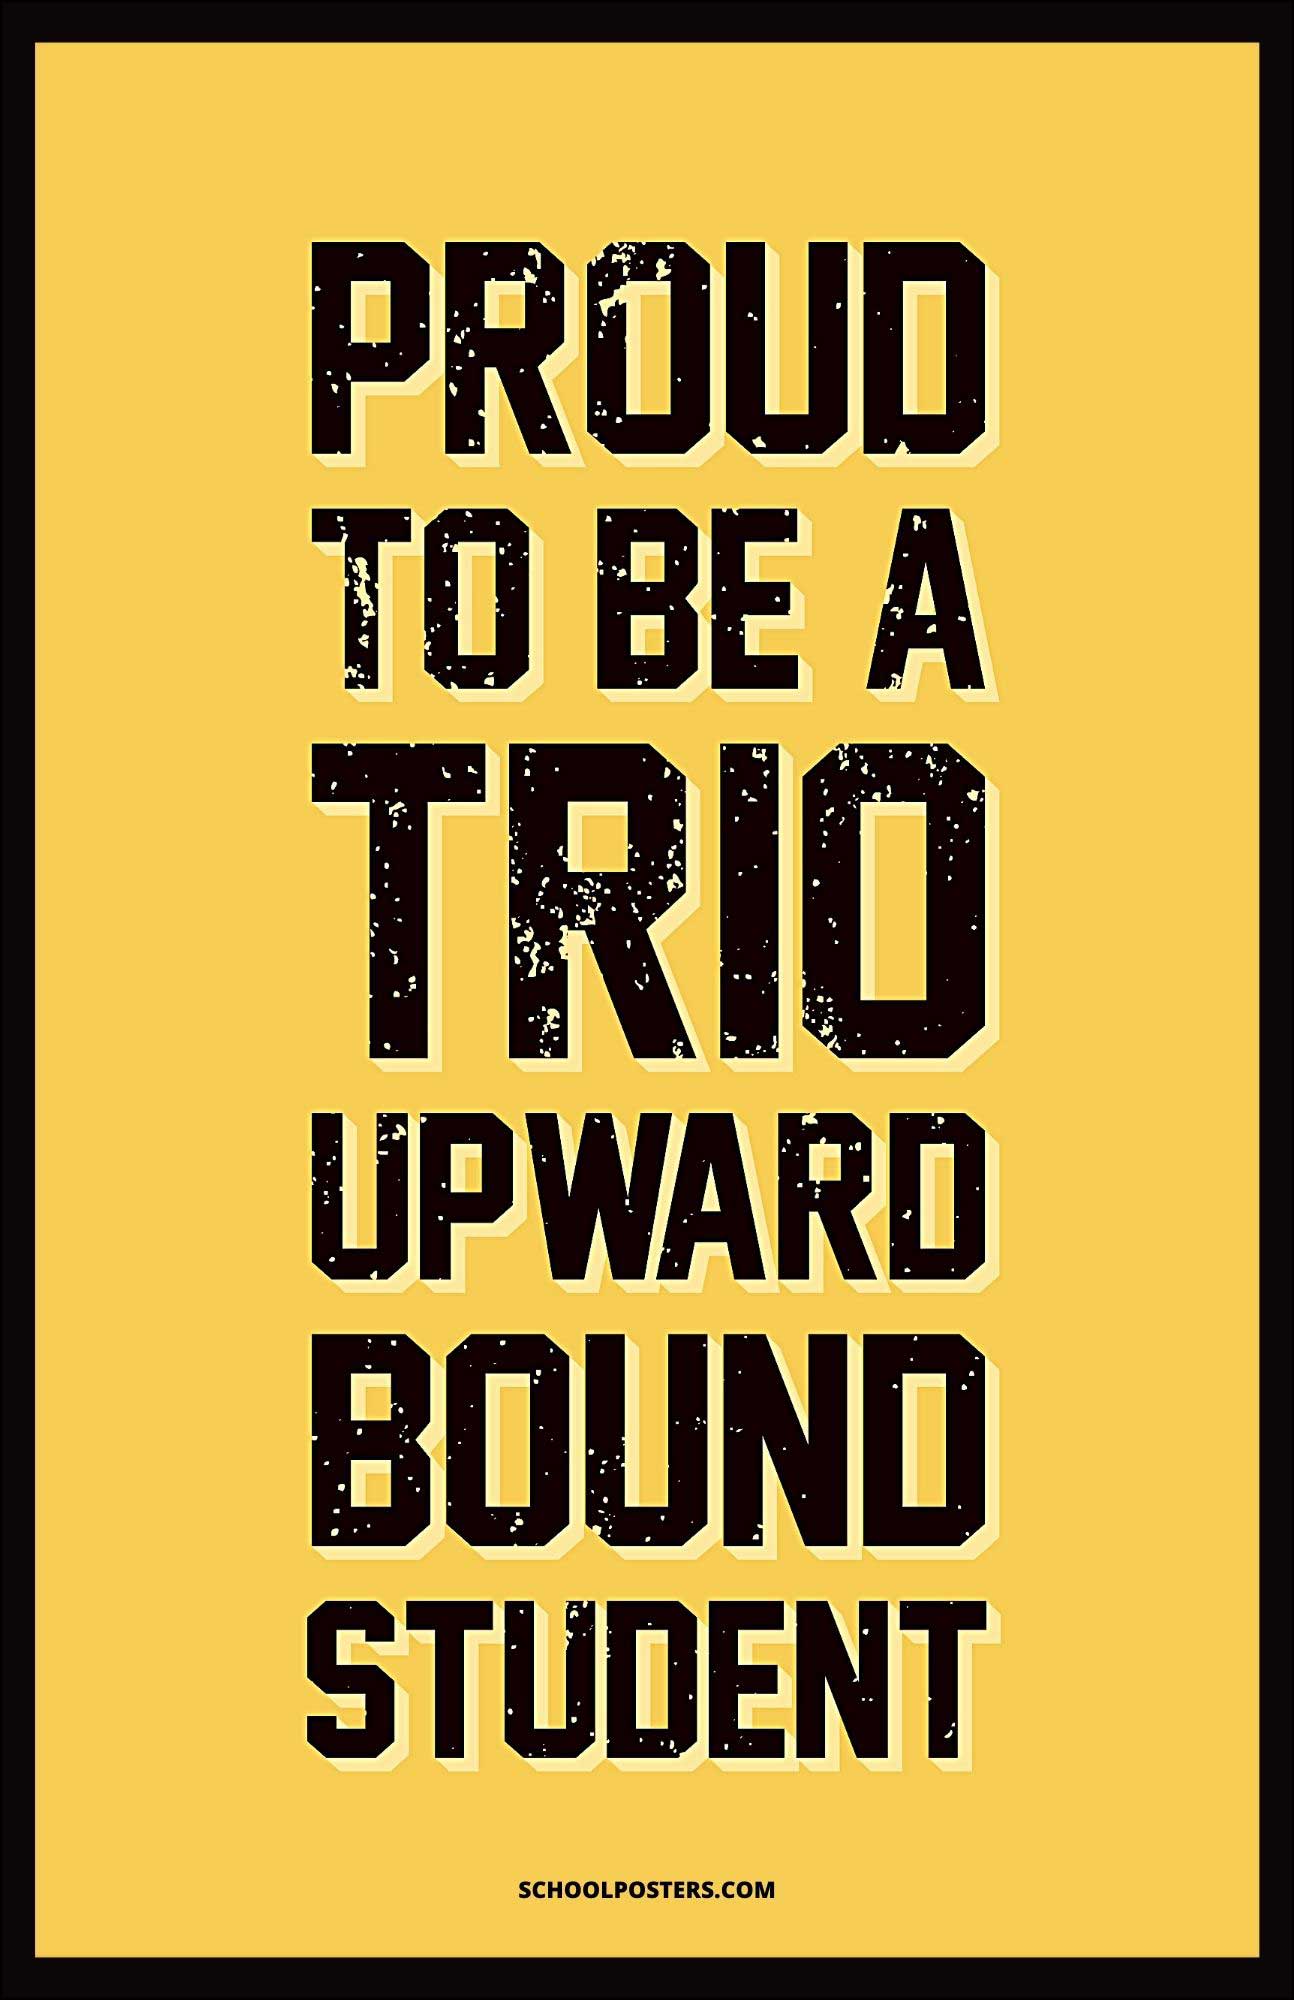 TRIO Upward Bound Student Poster